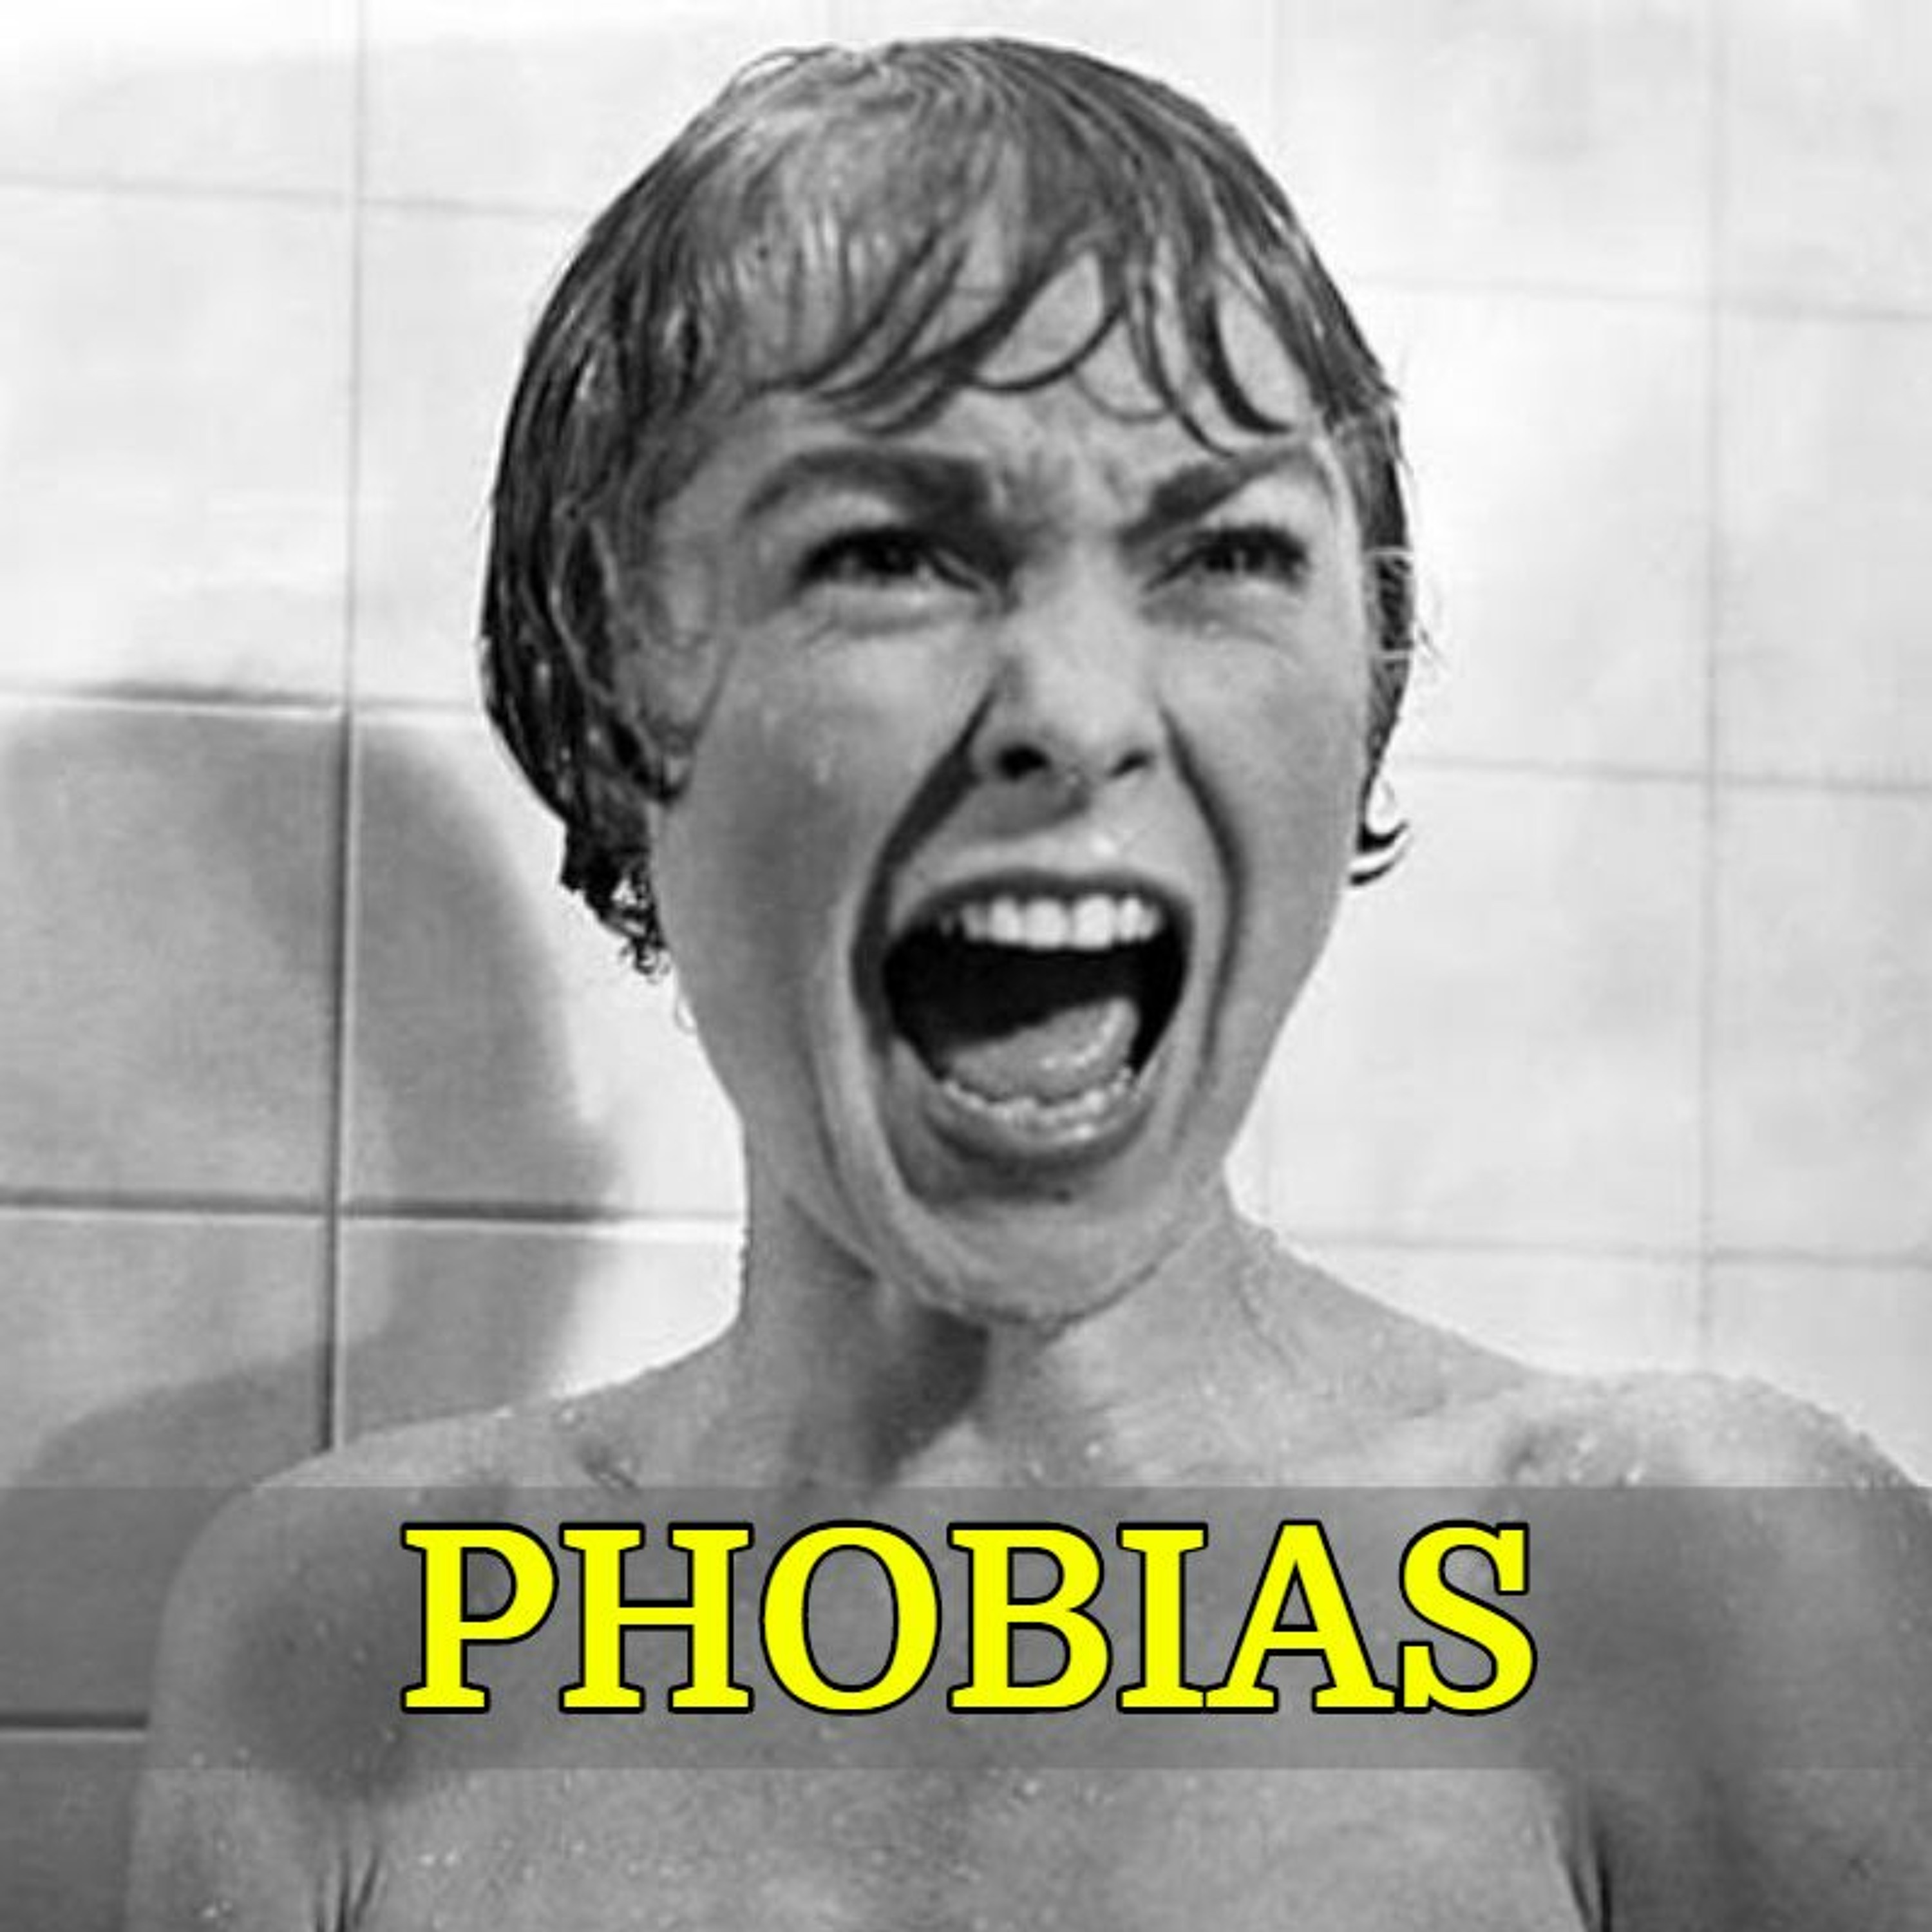 074 - Phobias